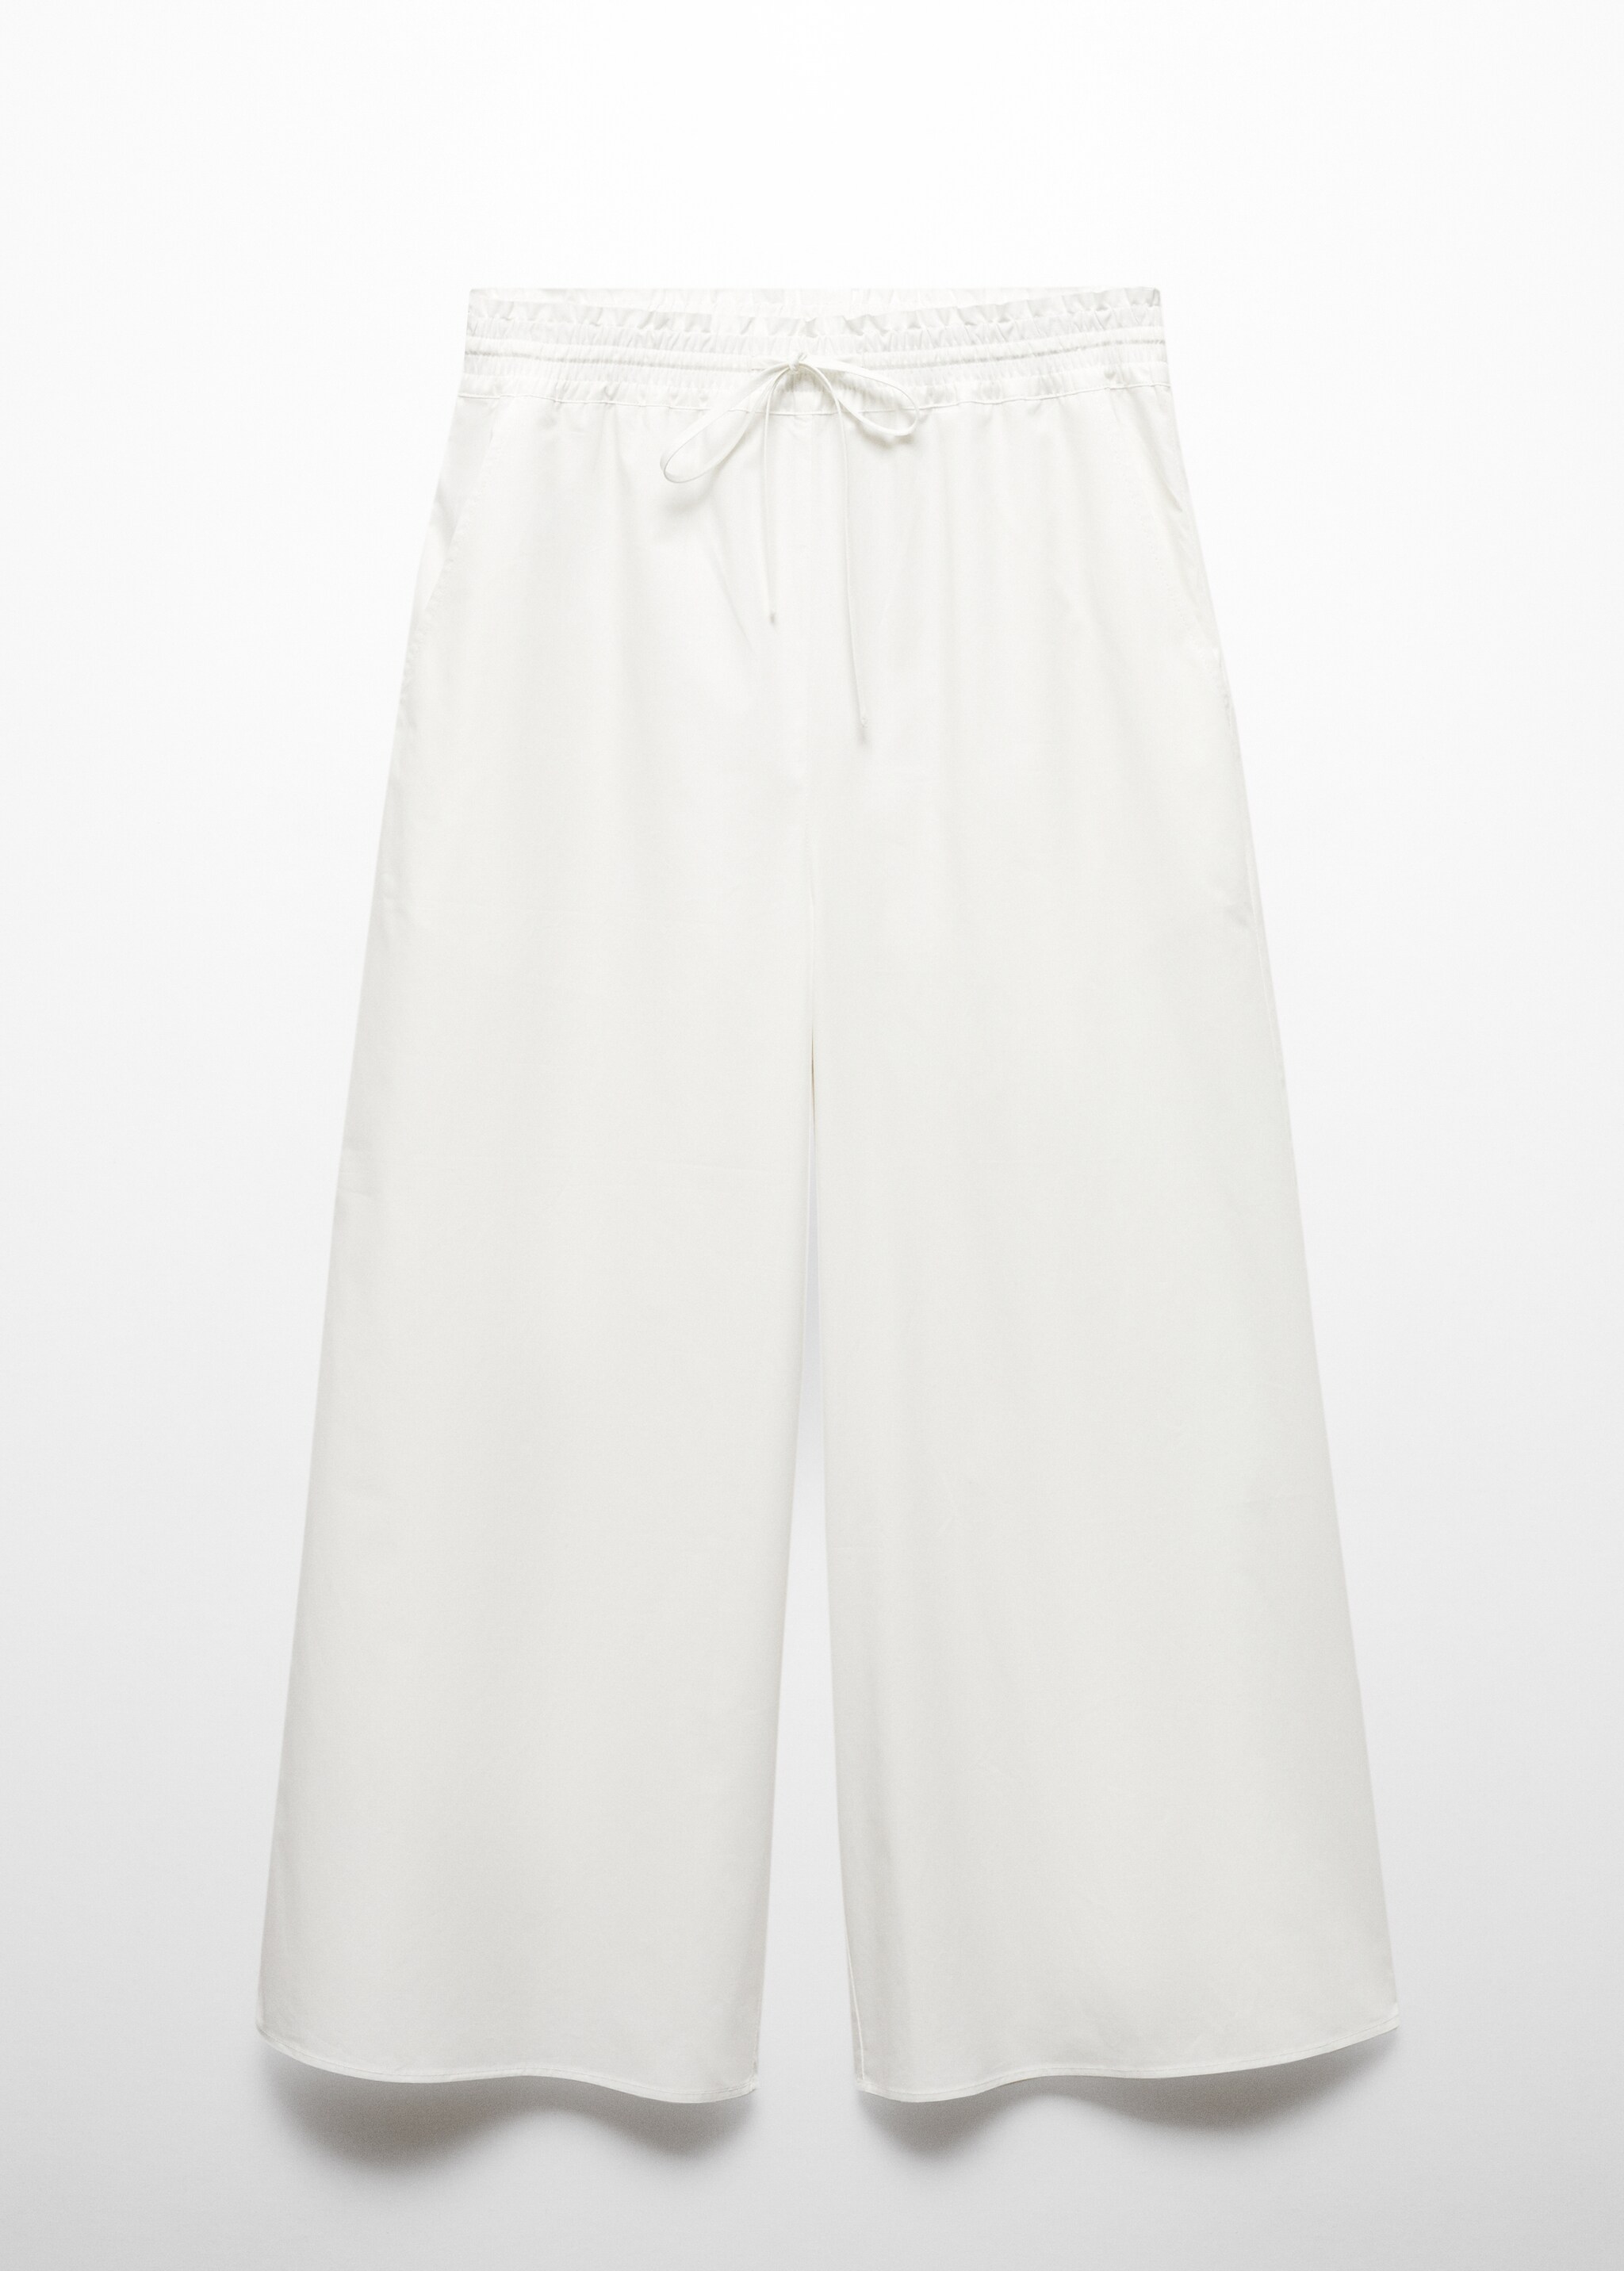 Pantaloni culotte 100% cotone - Articolo senza modello